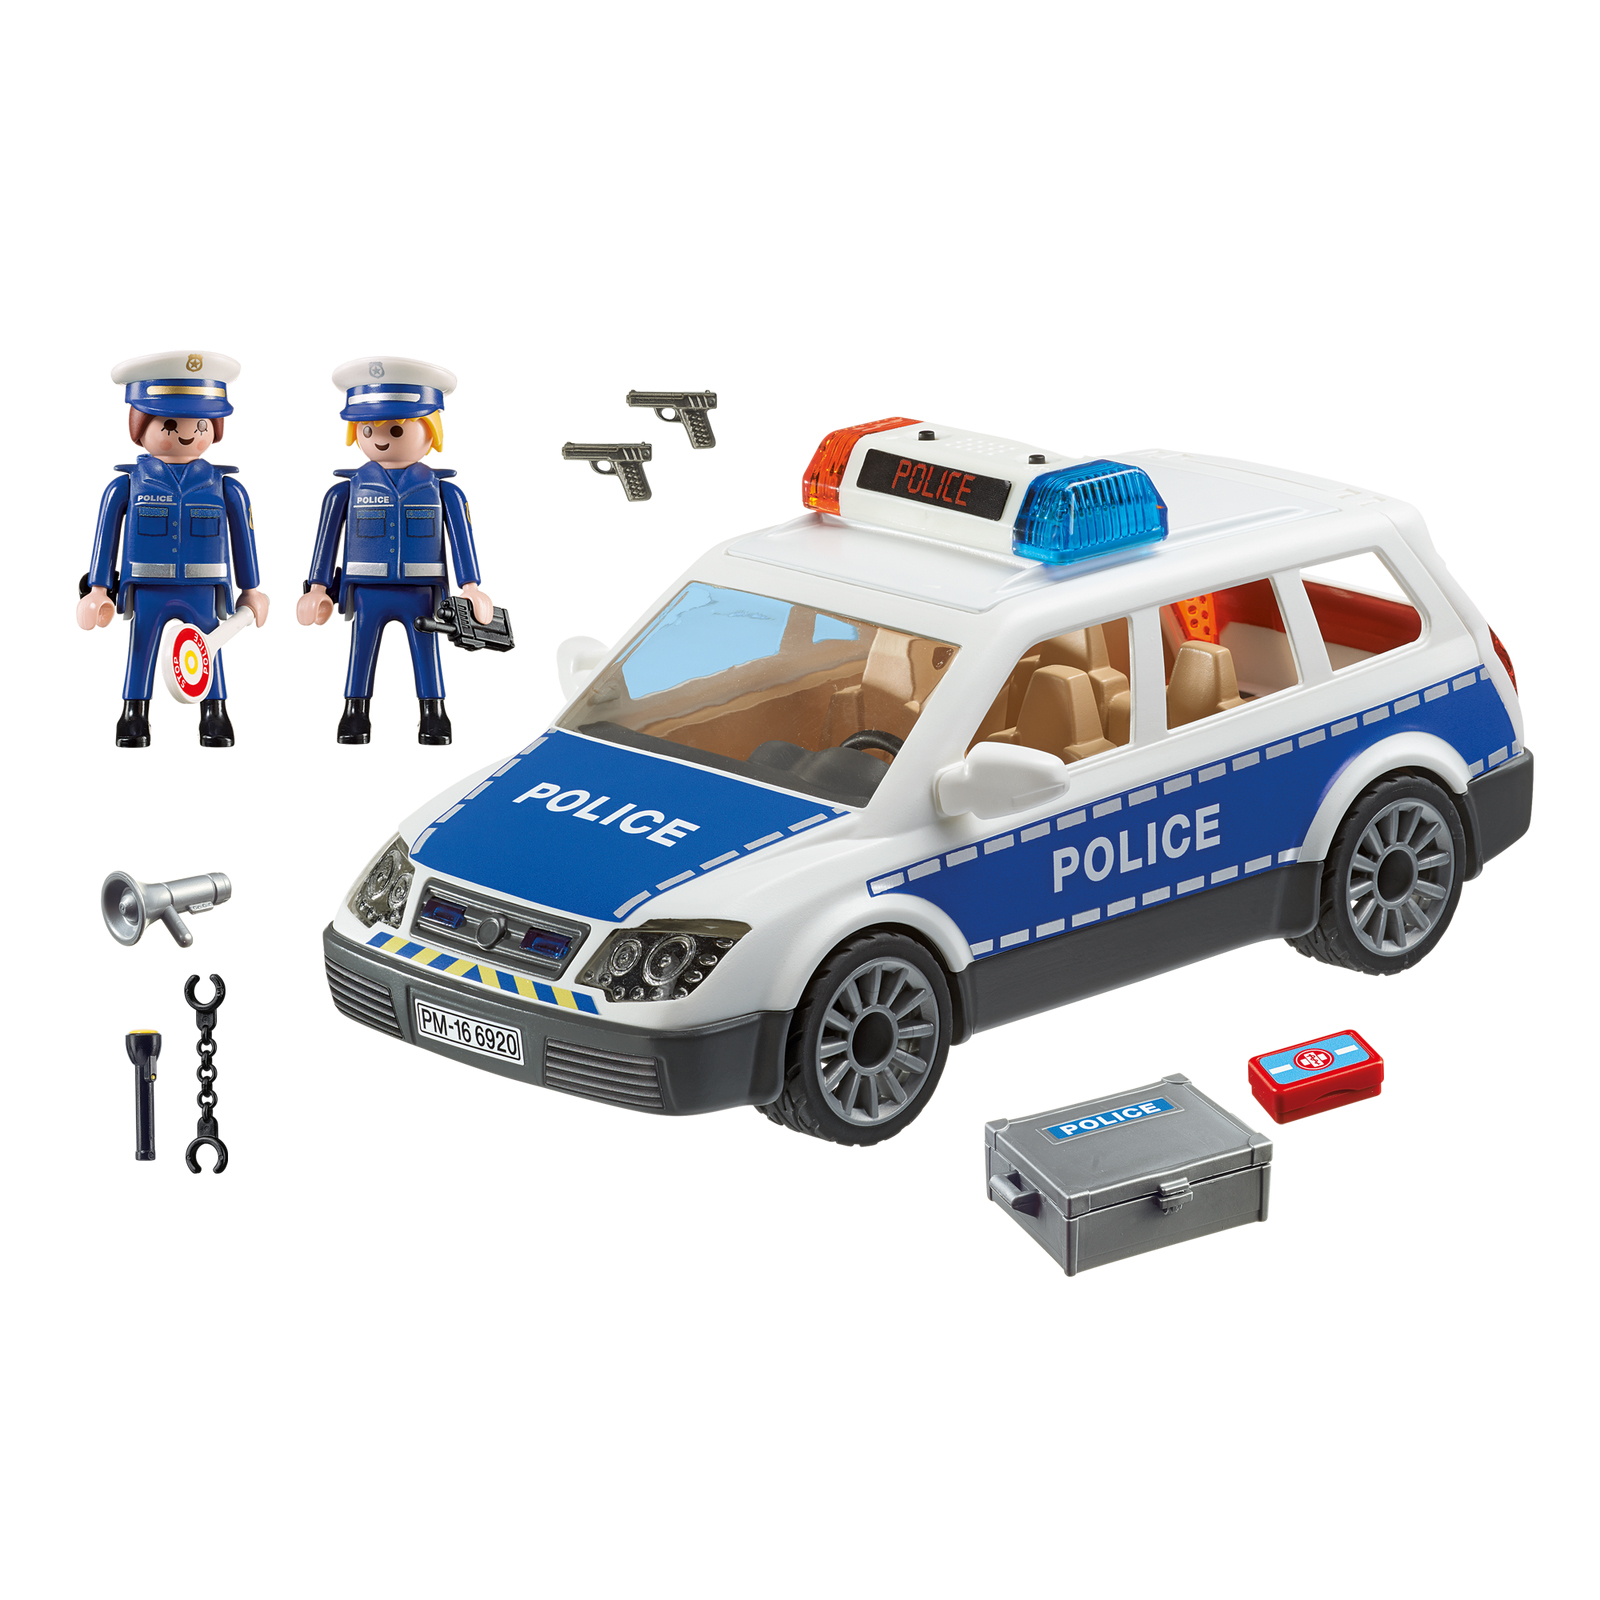 Игрушка полицейская купить. Полицейская машина Playmobil 6920. Playmobil полиция 6920. Полиция Плеймобил Плеймобил. Playmobil City наборы полиция.